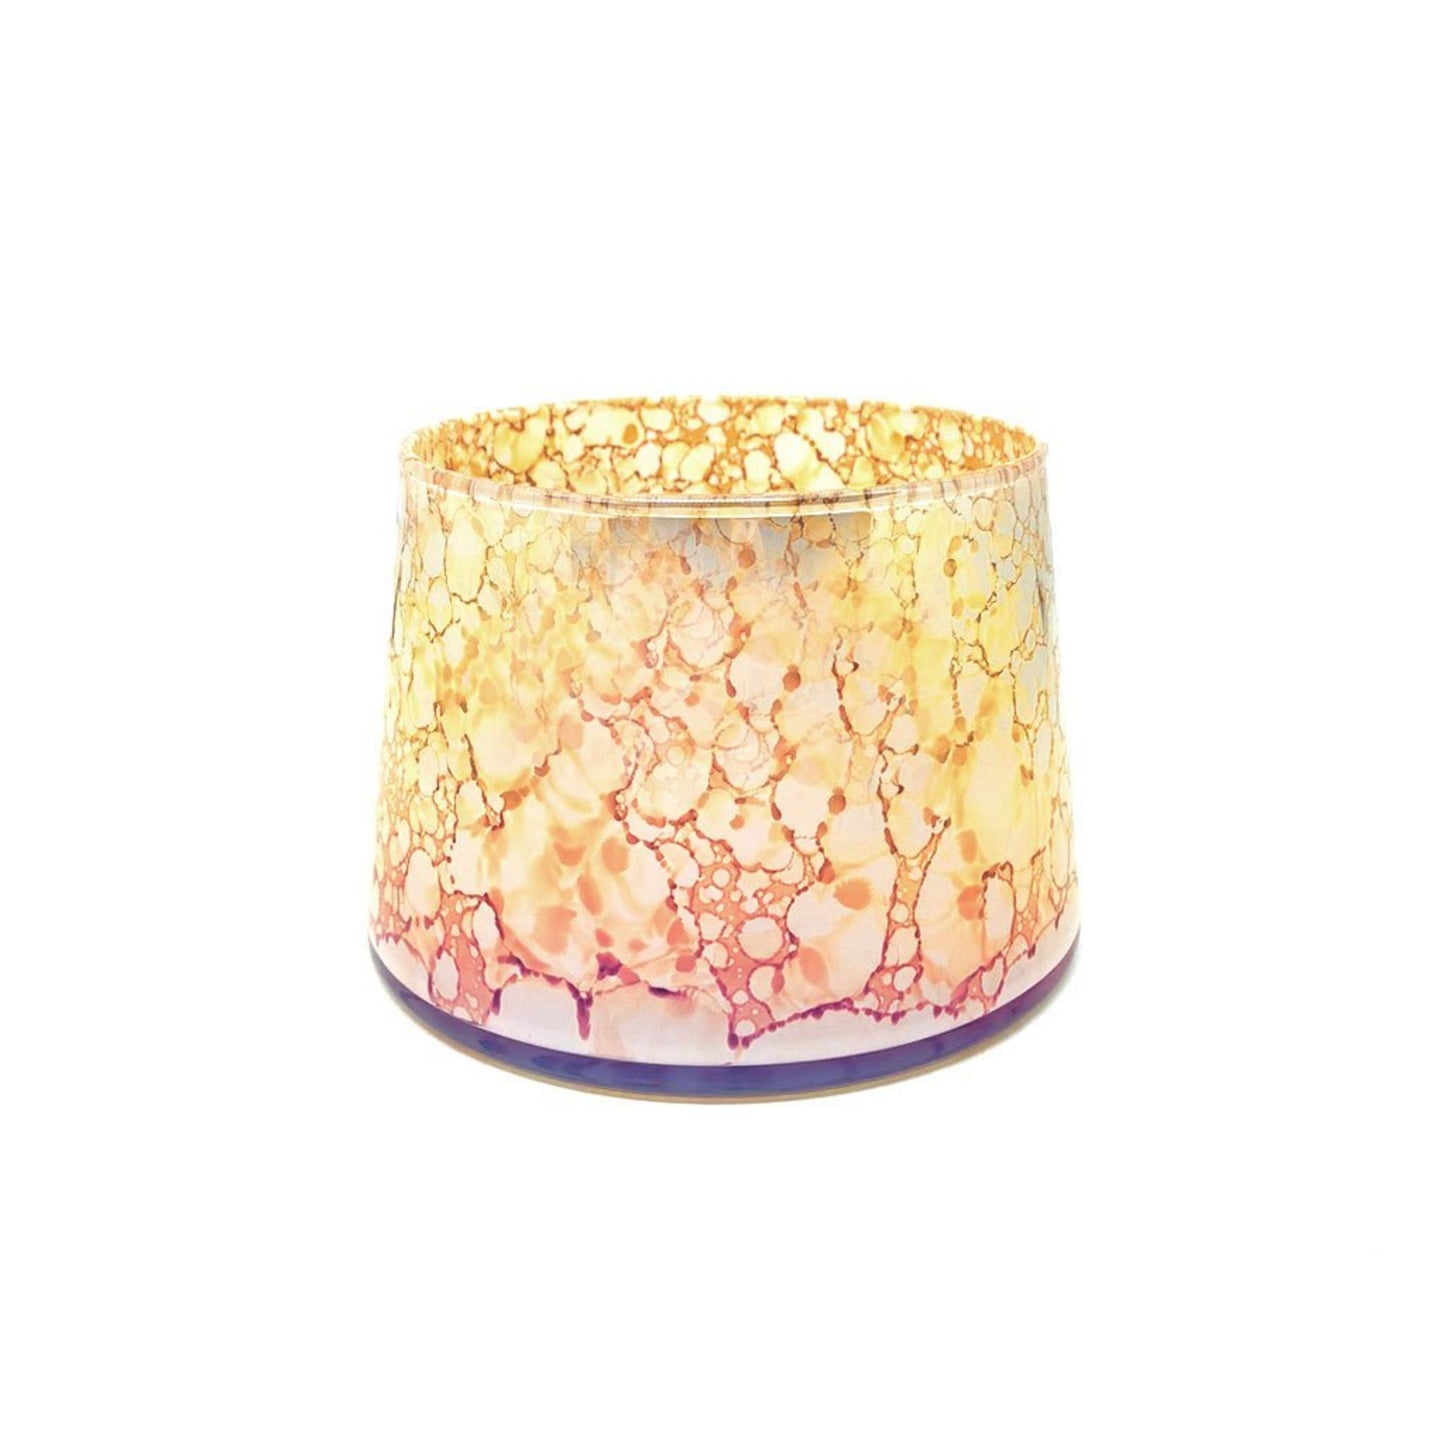 elegant, coloured strong smelling candle jars